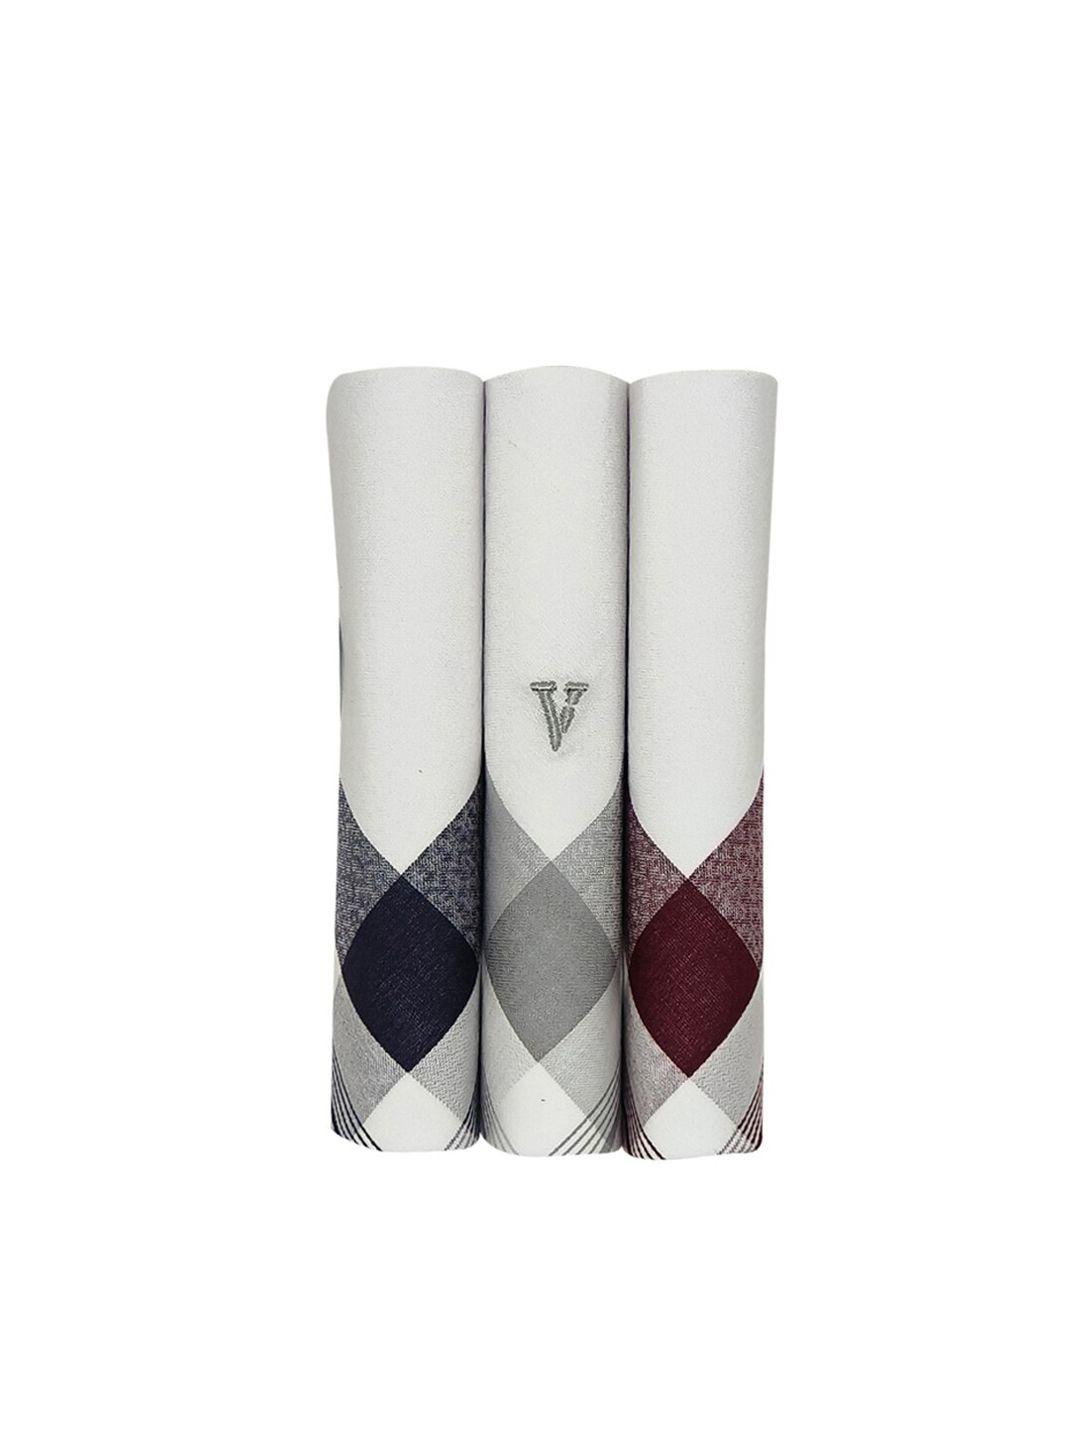 van-heusen-pack-of-3-printed-cotton-handkerchiefs